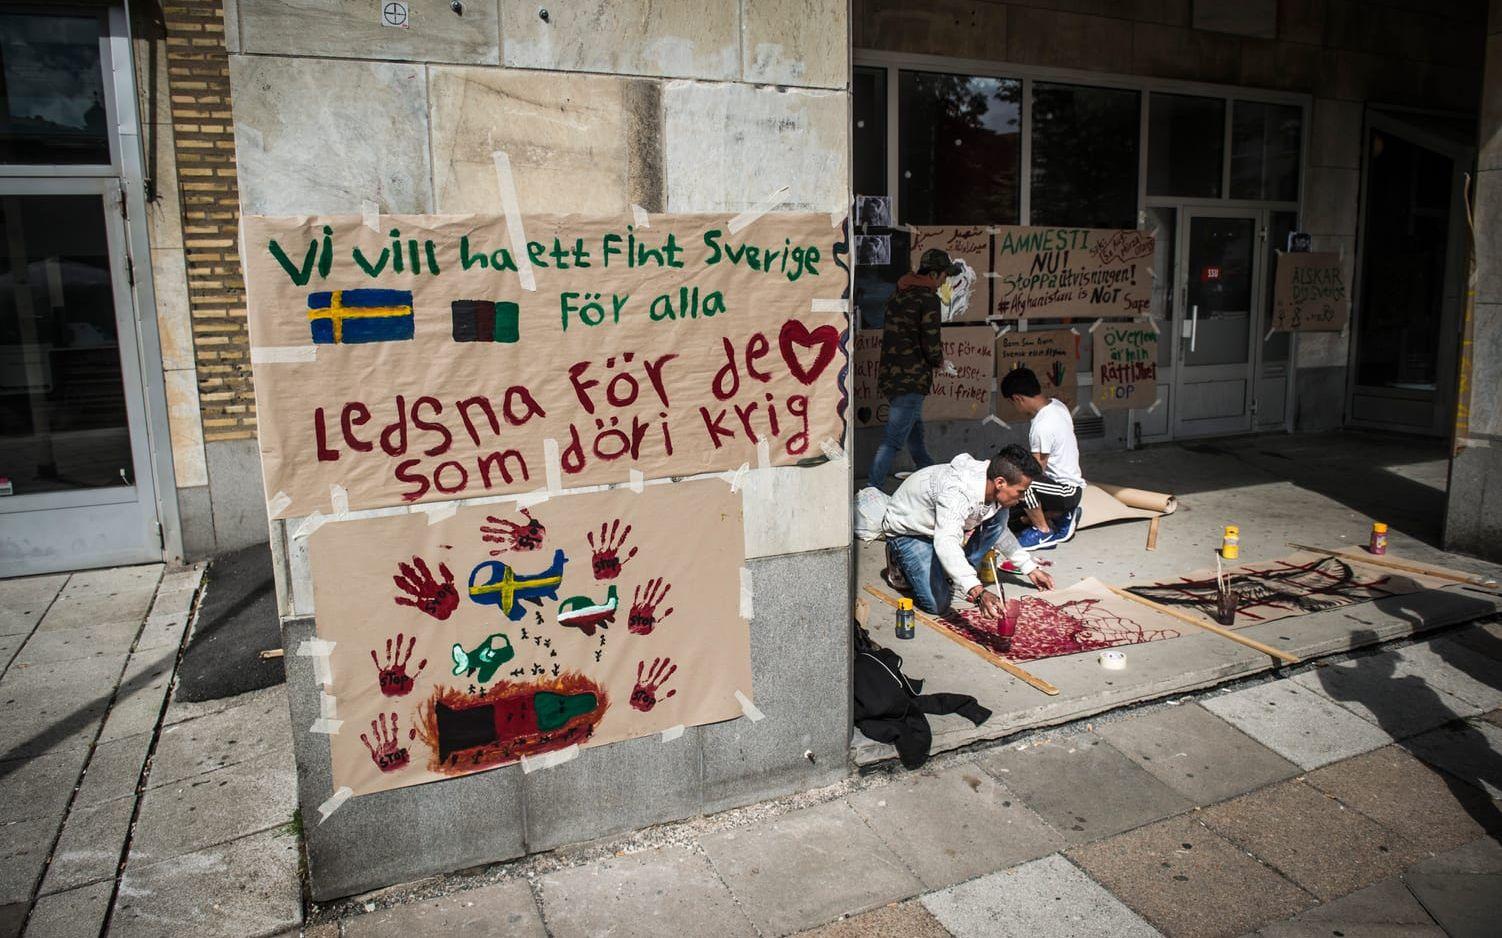 VILL SE FÖRÄNDRING. Ingen väljer att bli flykting, skrev några demonstranter på ett plakat. Bild: Olof Ohlsson